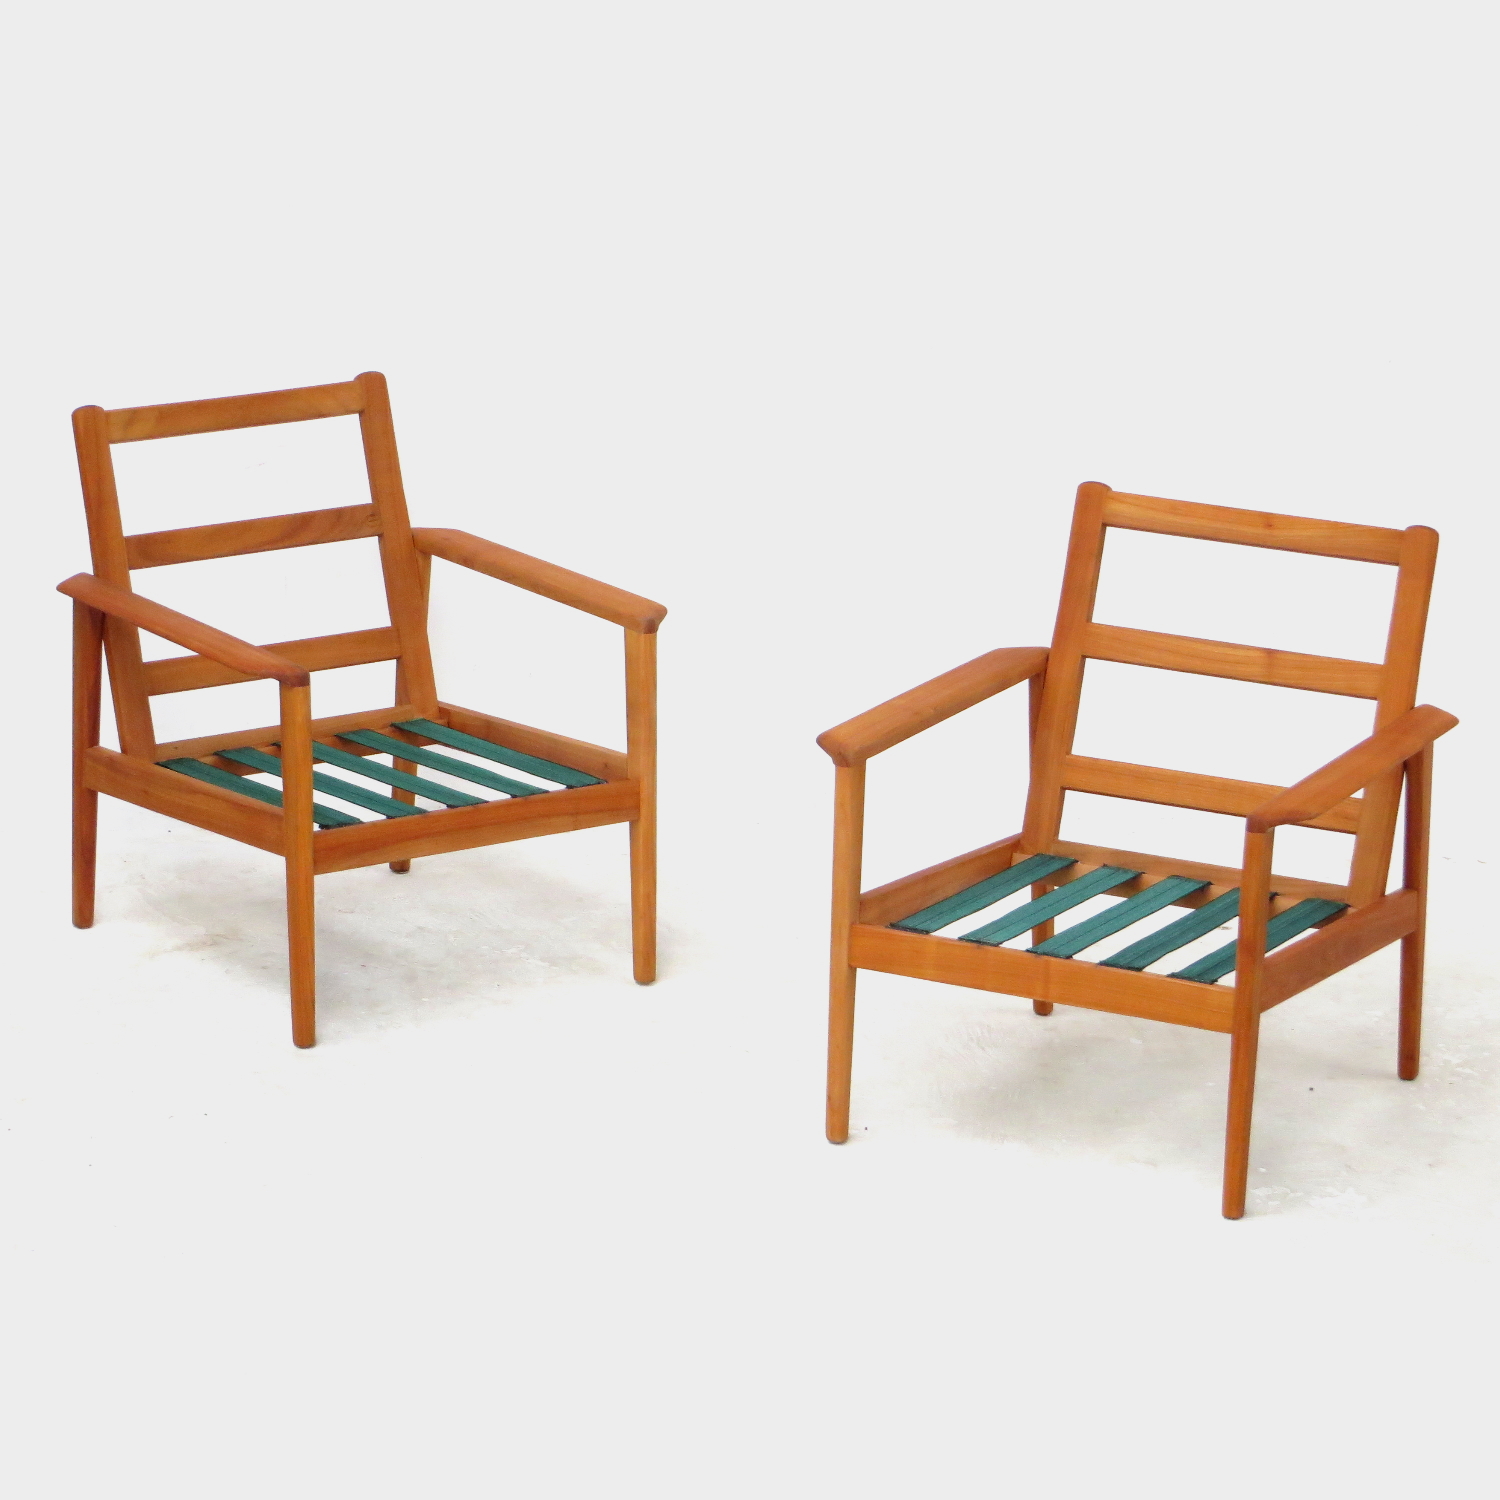 Foto van de twee vintage design fauteuils zonder kussens